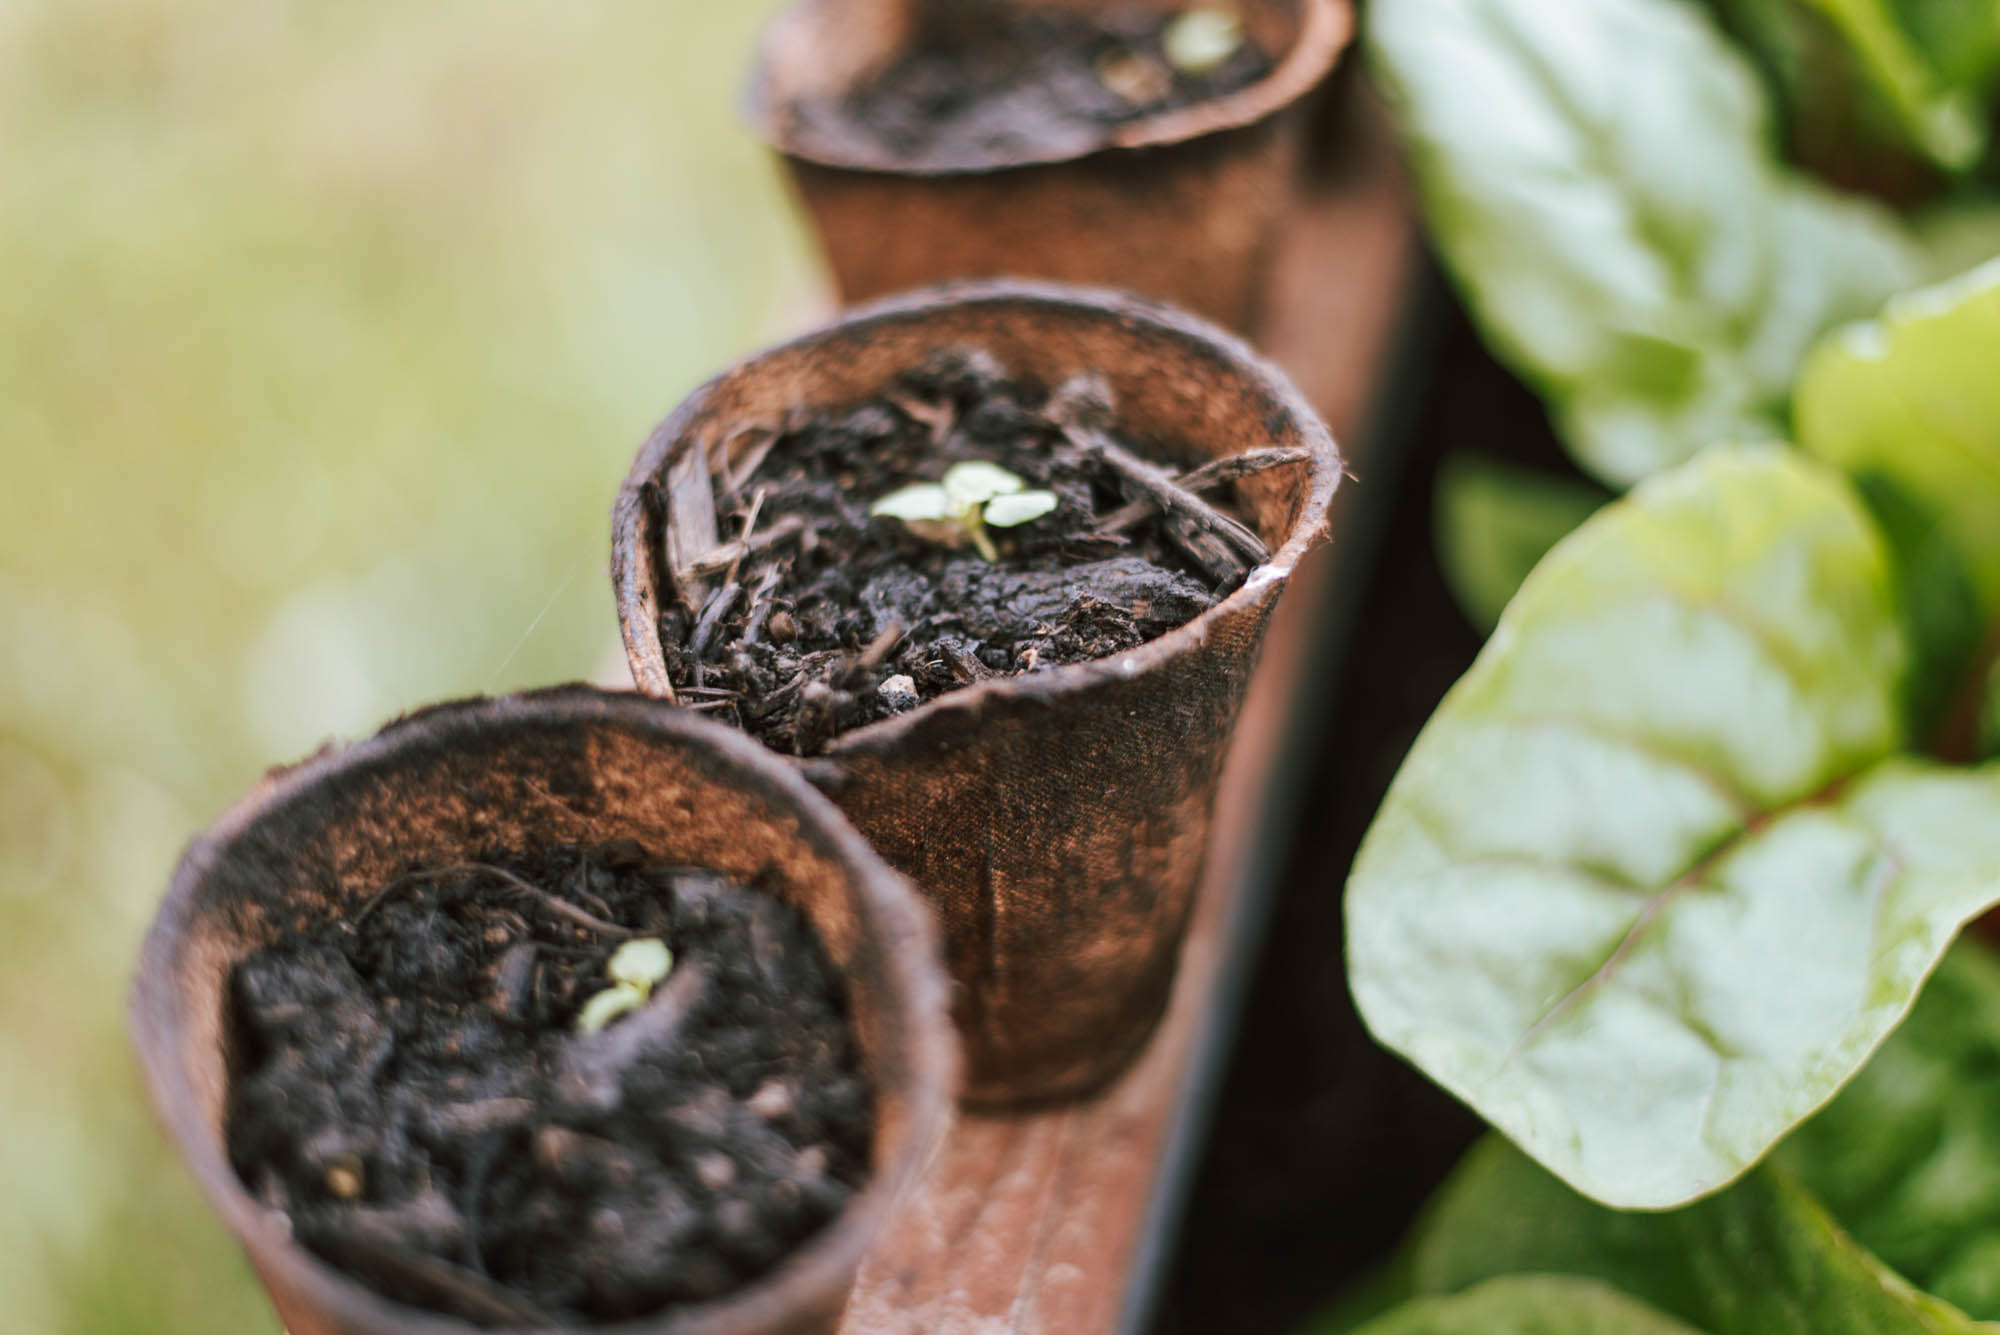 Wasser sparen im Garten: 8 Tipps, wie ihr euren Gemüsegarten weniger Gießen müsst, trotz Hitzewellen und Trockenheit UND die Umwelt schont